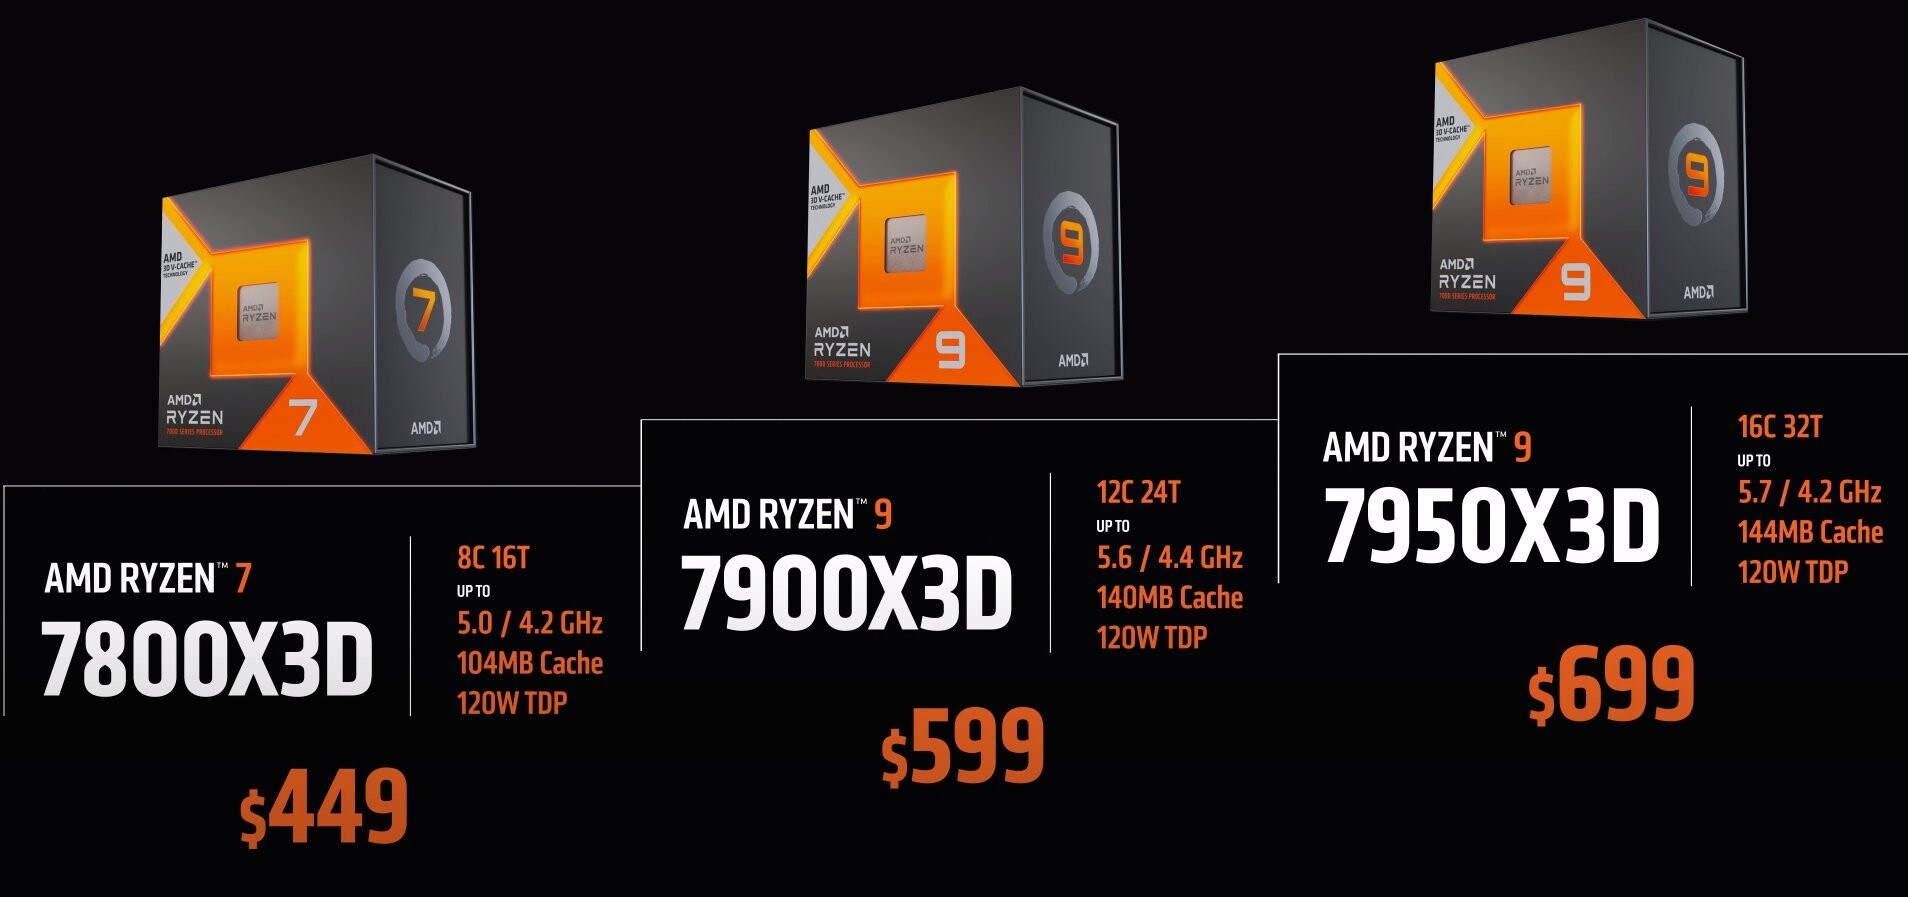 AMD Ryzen 7000X3D işlemcilerin fiyatı ve çıkış tarihi açıklandı